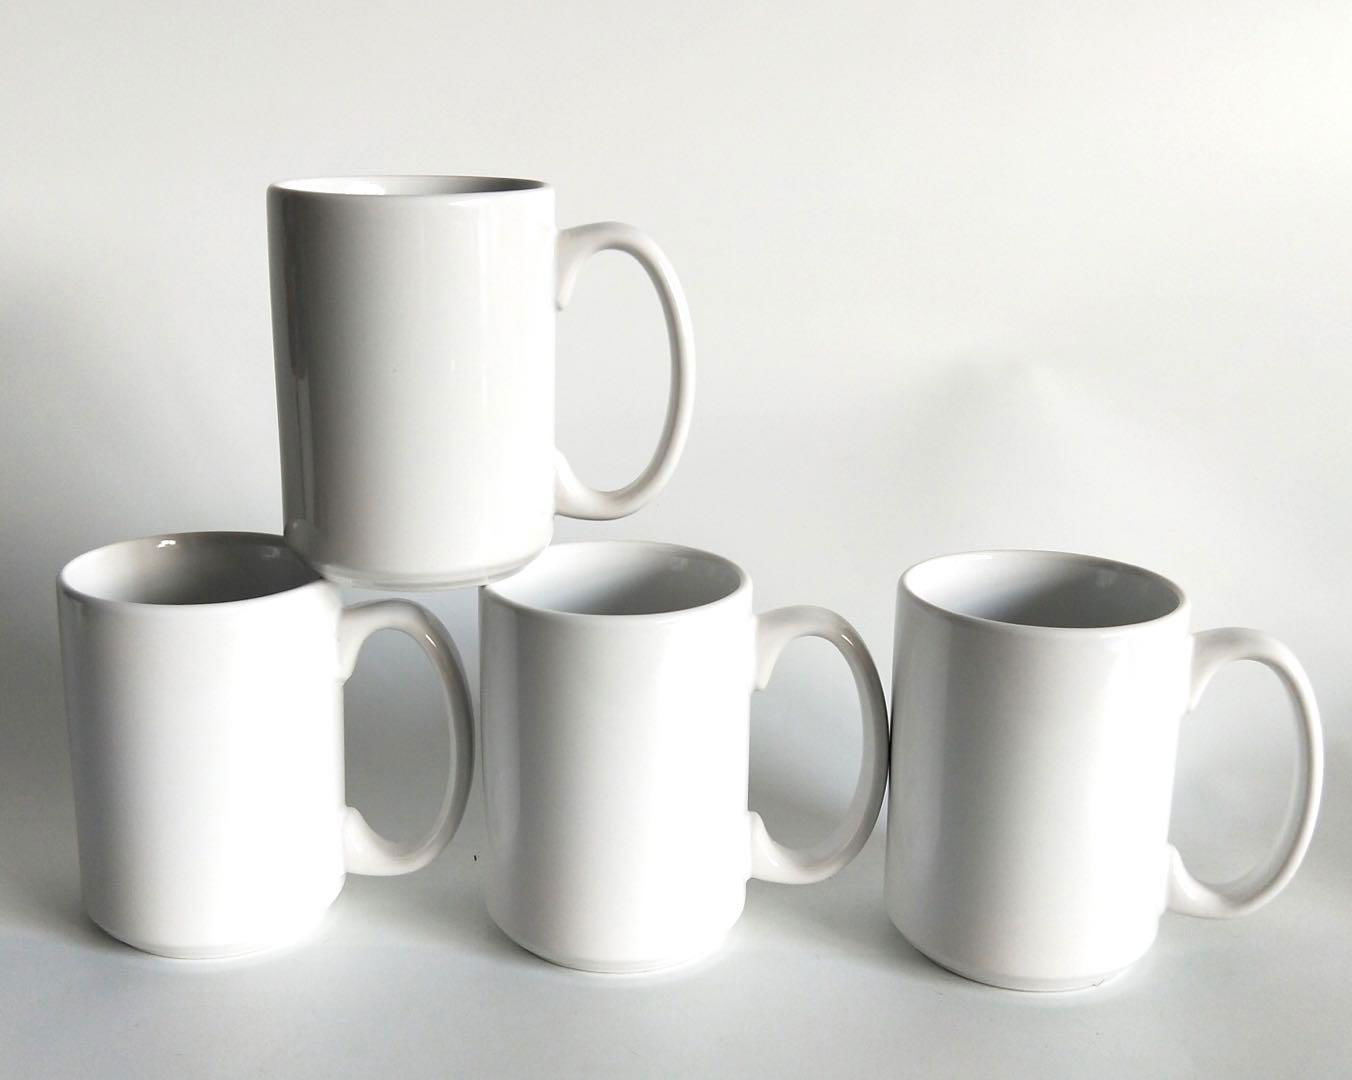 15 oz Wholesale Sublimation Blank Ceramic Coffee Mug 